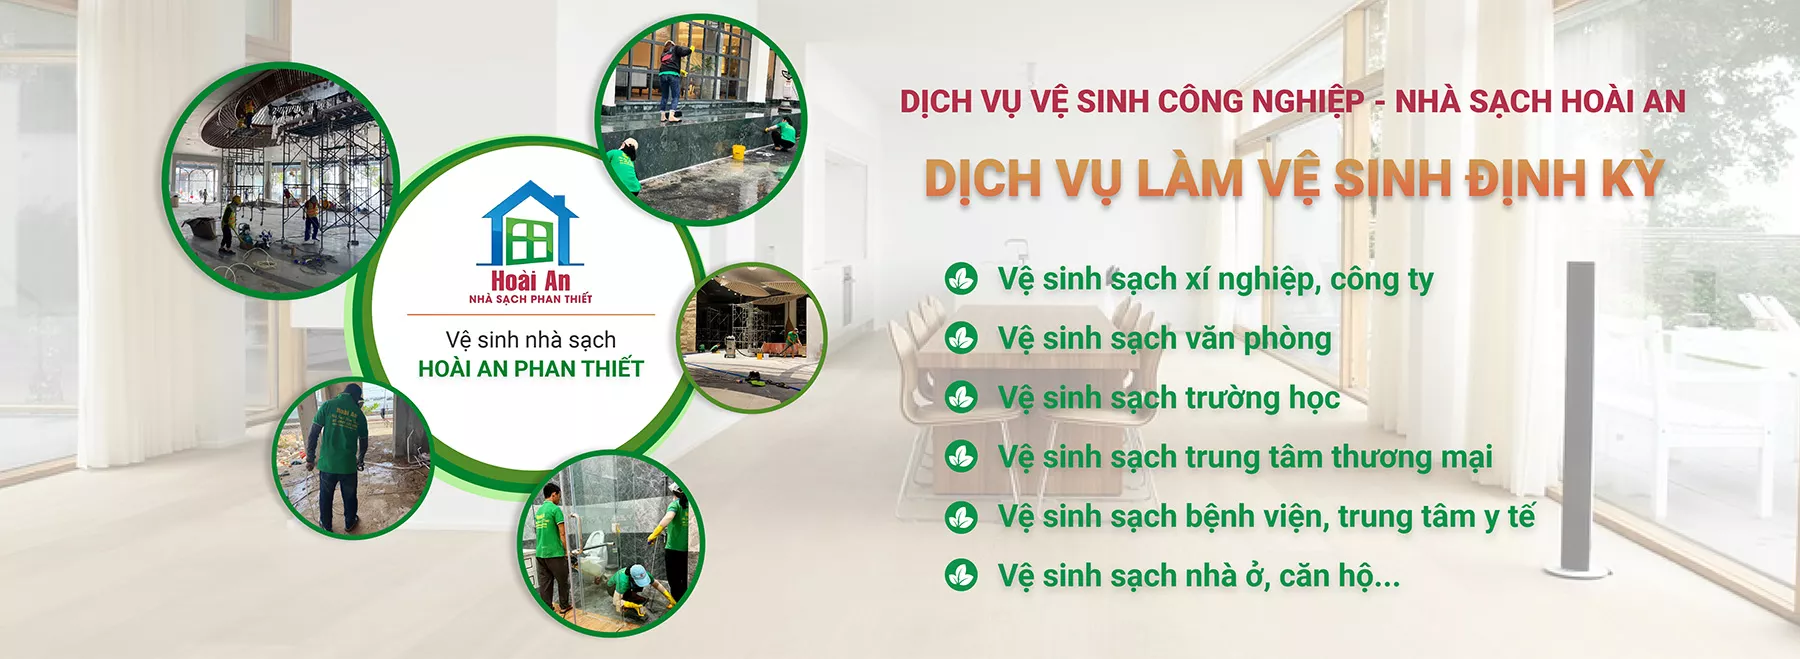 Vệ sinh công nghiệp Hoài An - Phan Thiết Bình Thuận